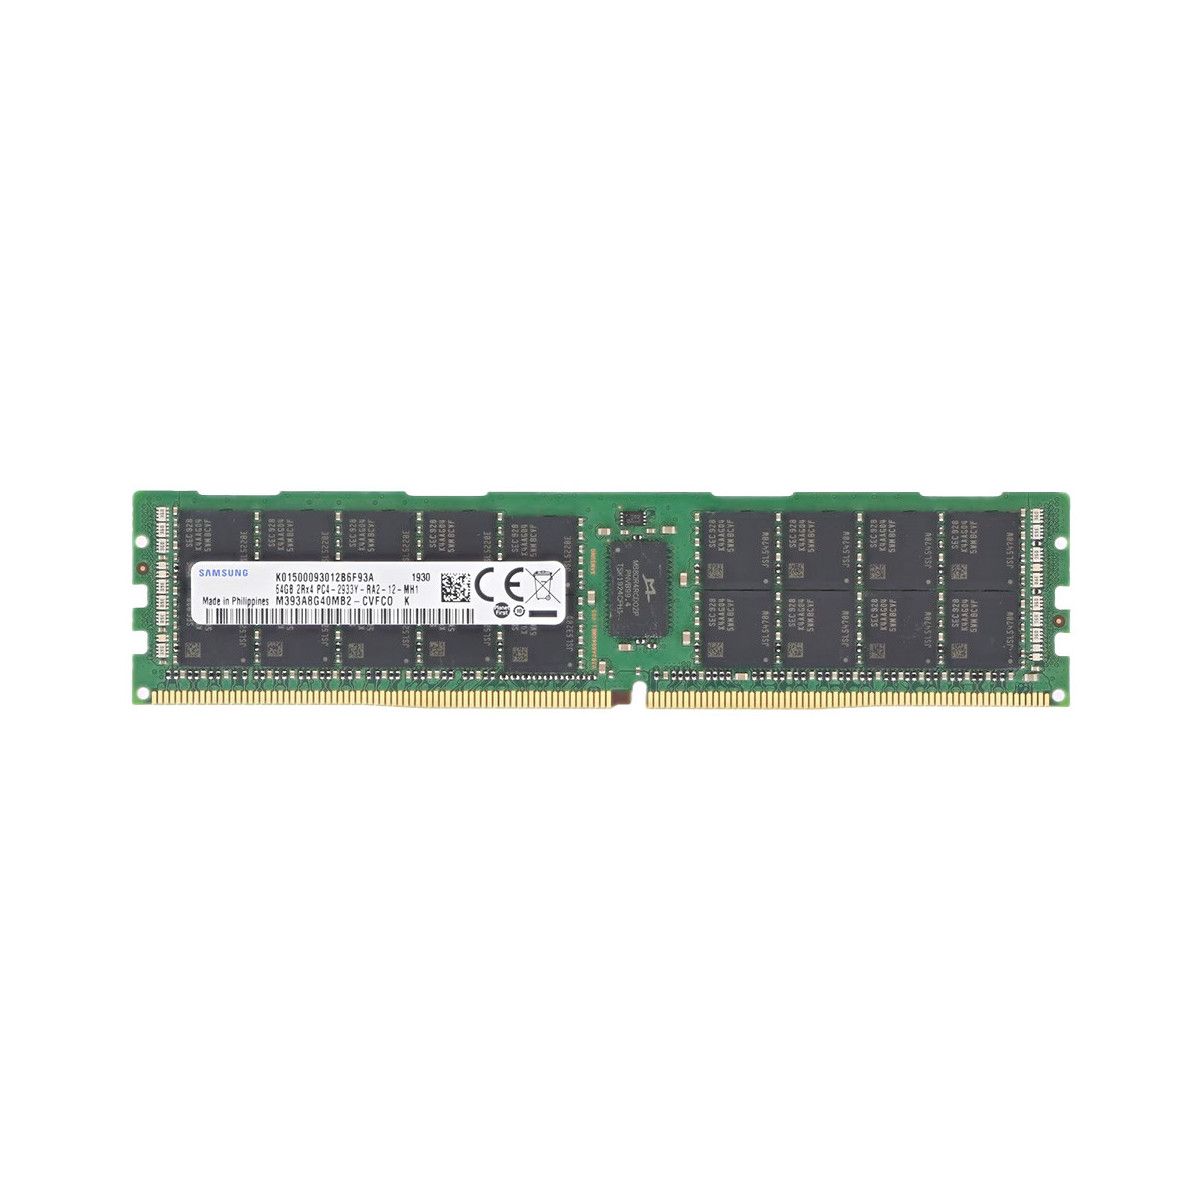 4ZC7A08744-MS -JA- Memstar 1x 64GB DDR4-2933 RDIMM PC4-23466U-R